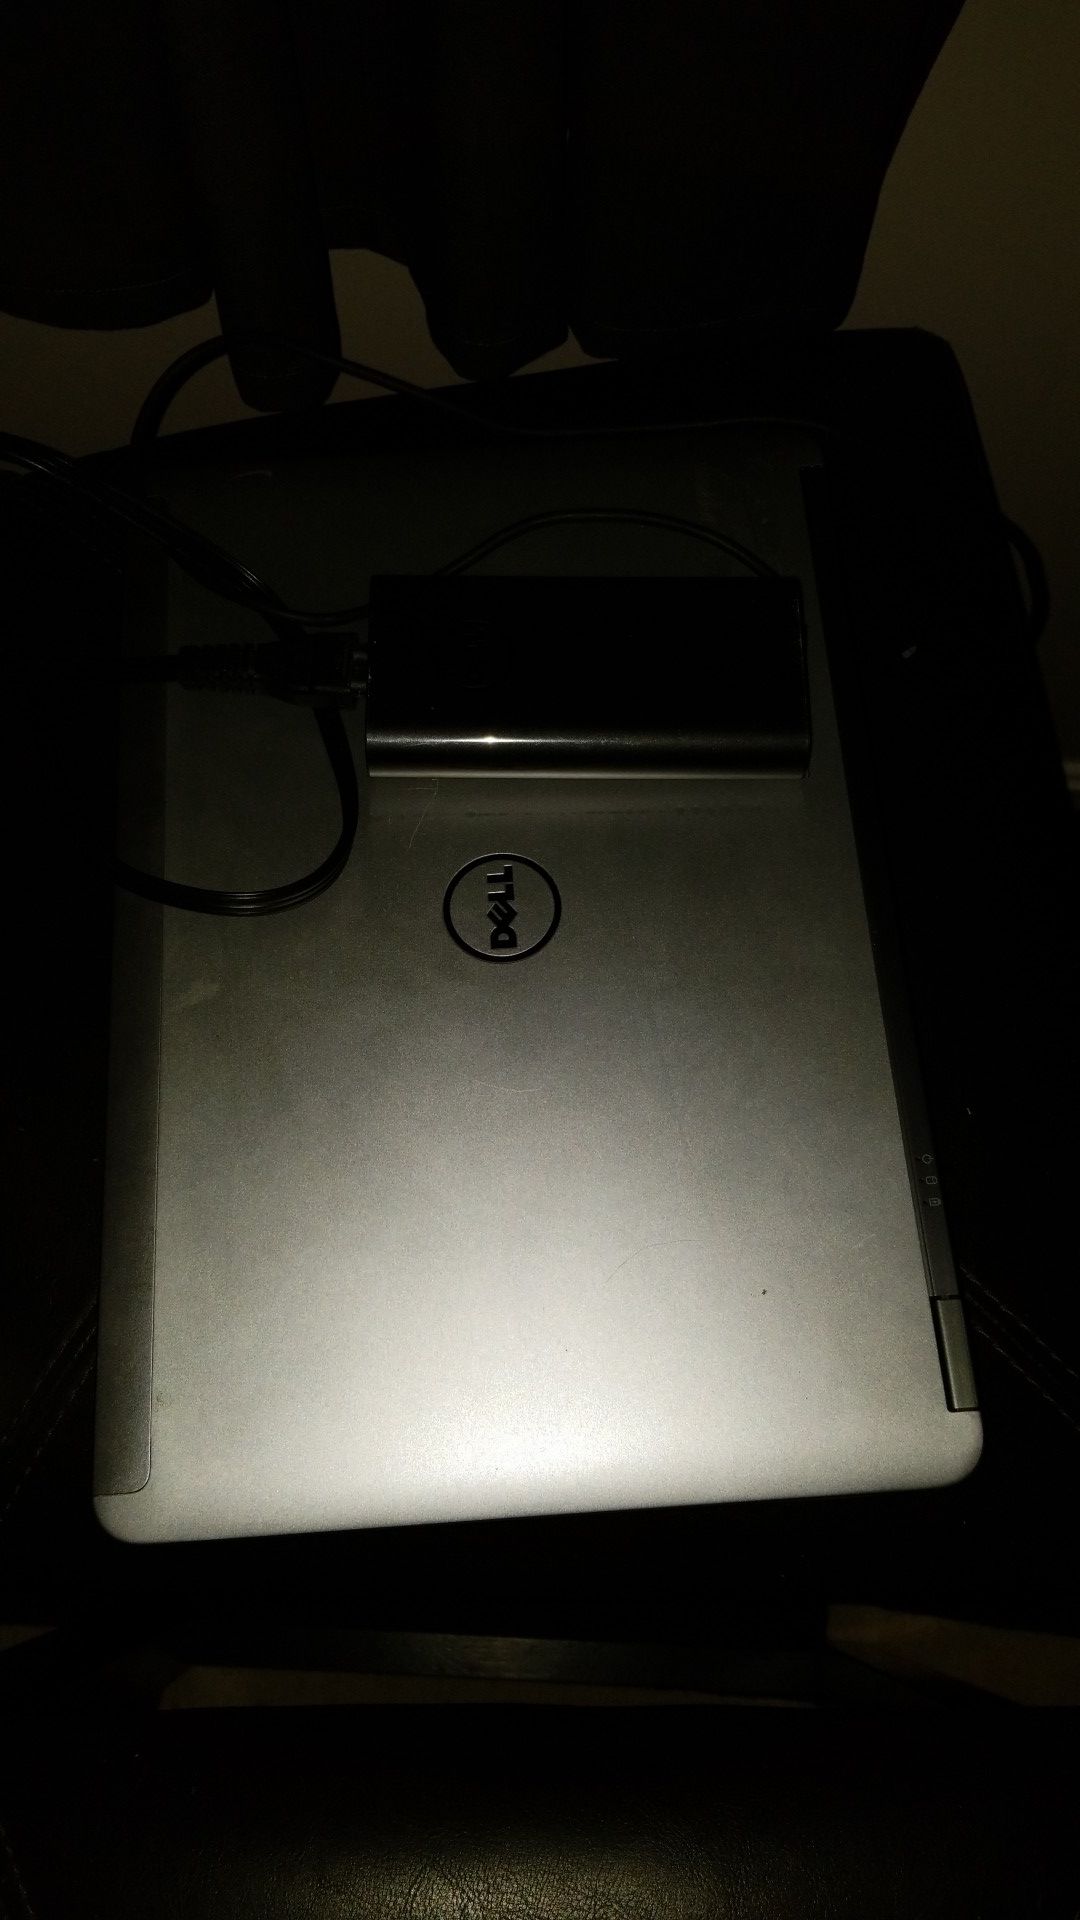 Dell E6440 Laptop